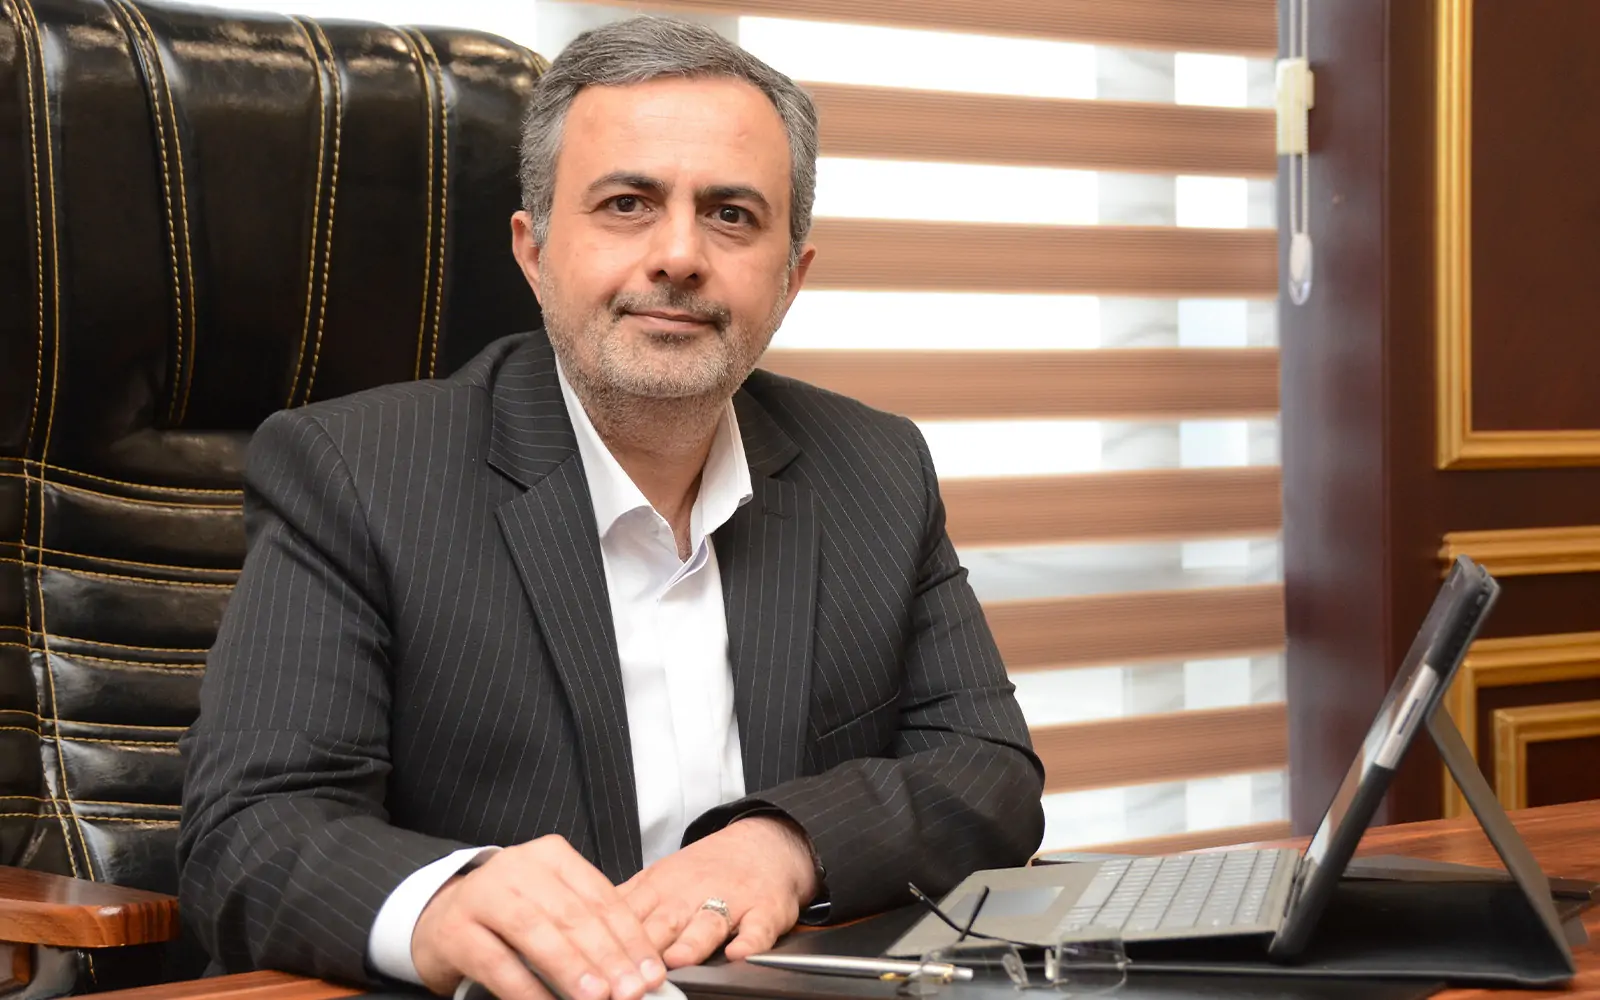 علی نوری، مدیرعامل شرکت ارتباطات هوشمند شهر